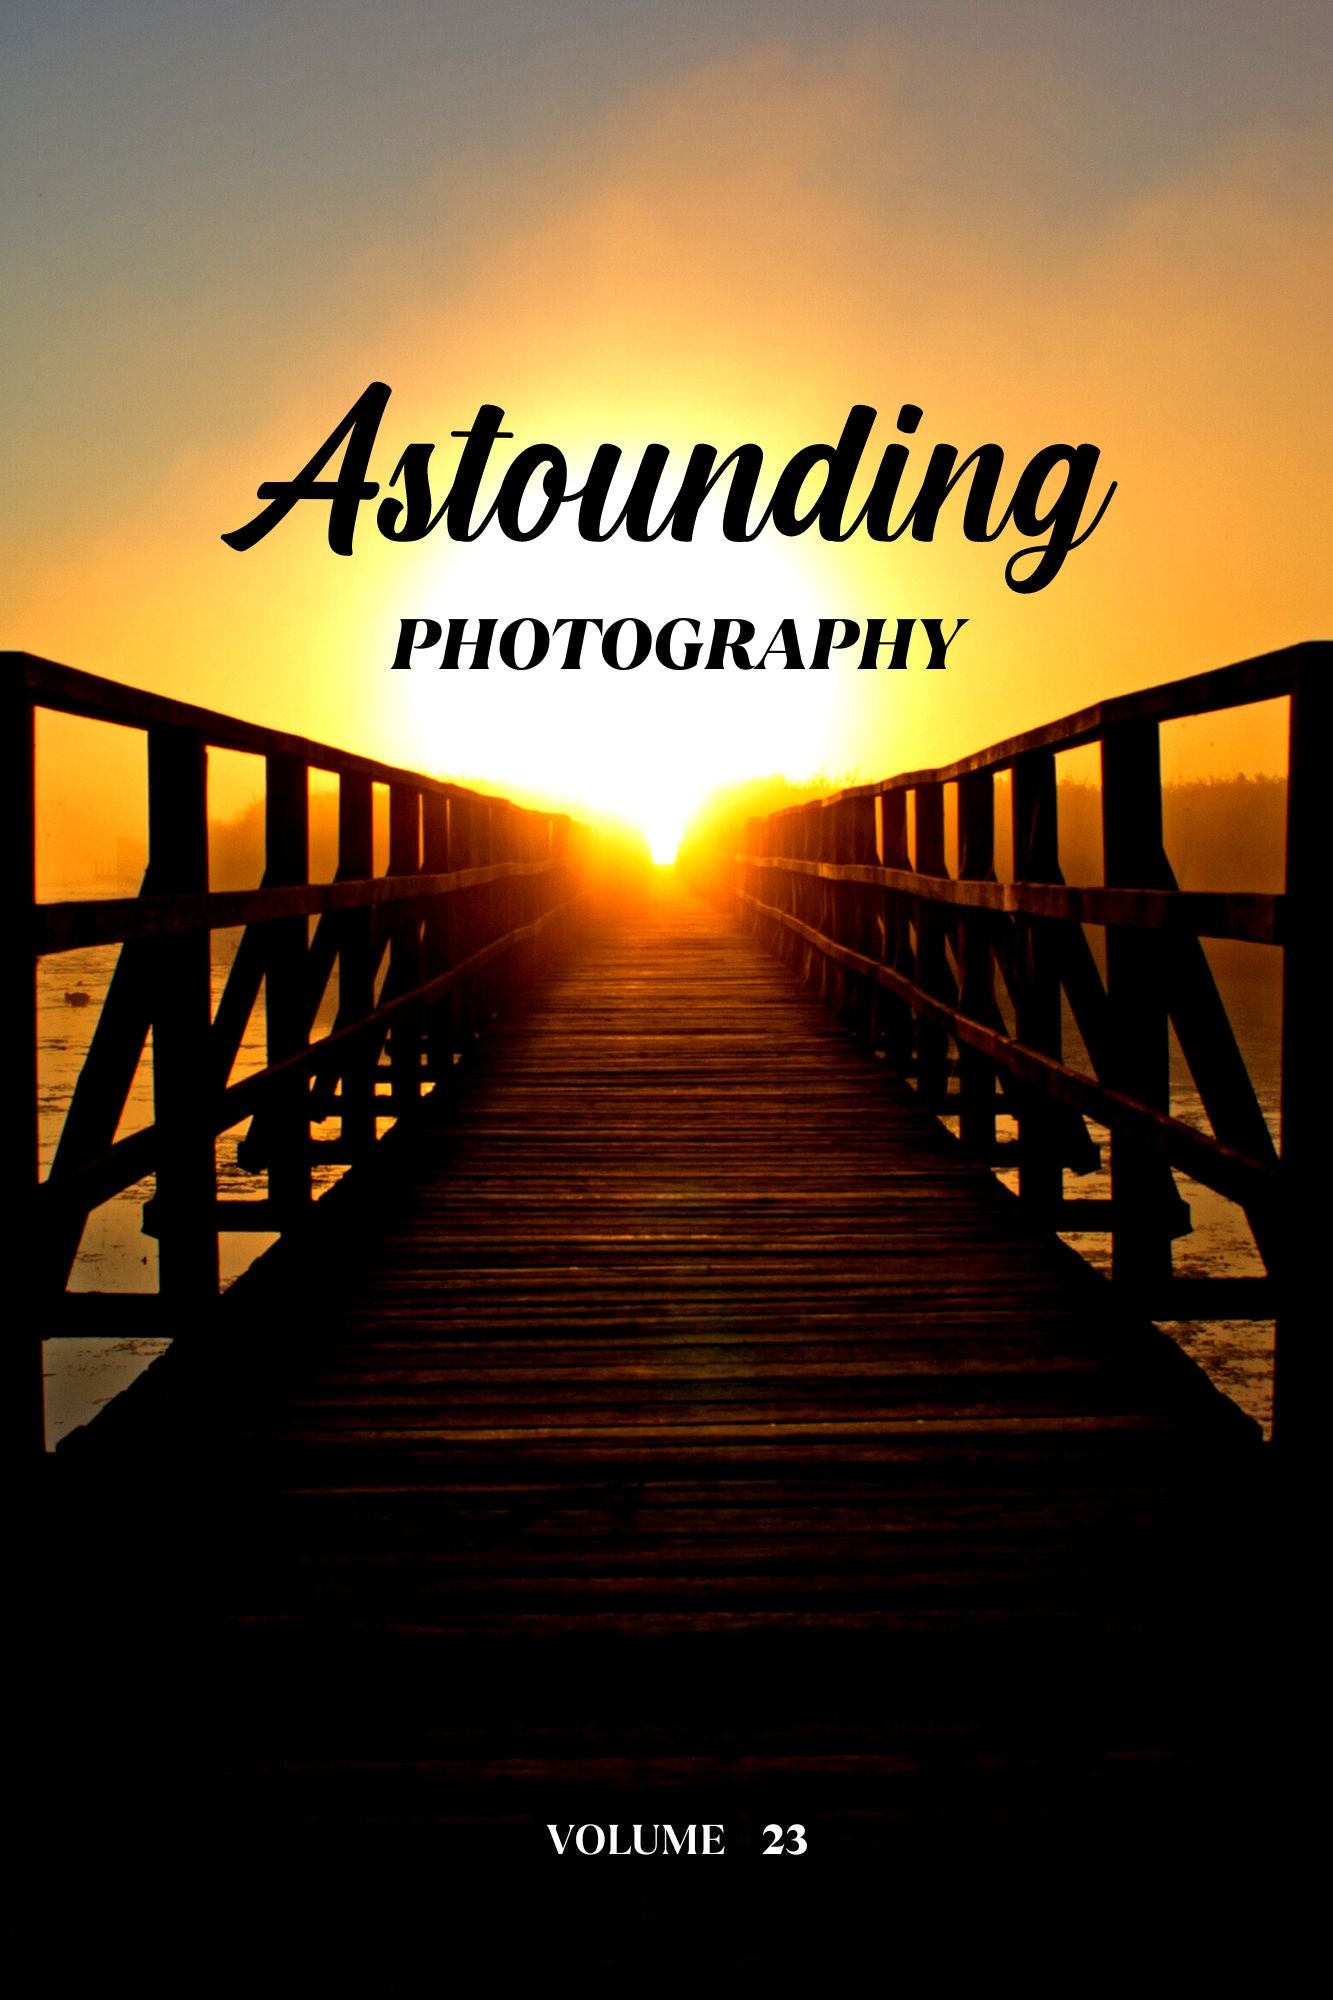 Astounding Photography Volume 23 (Physical Book Pre-Order)